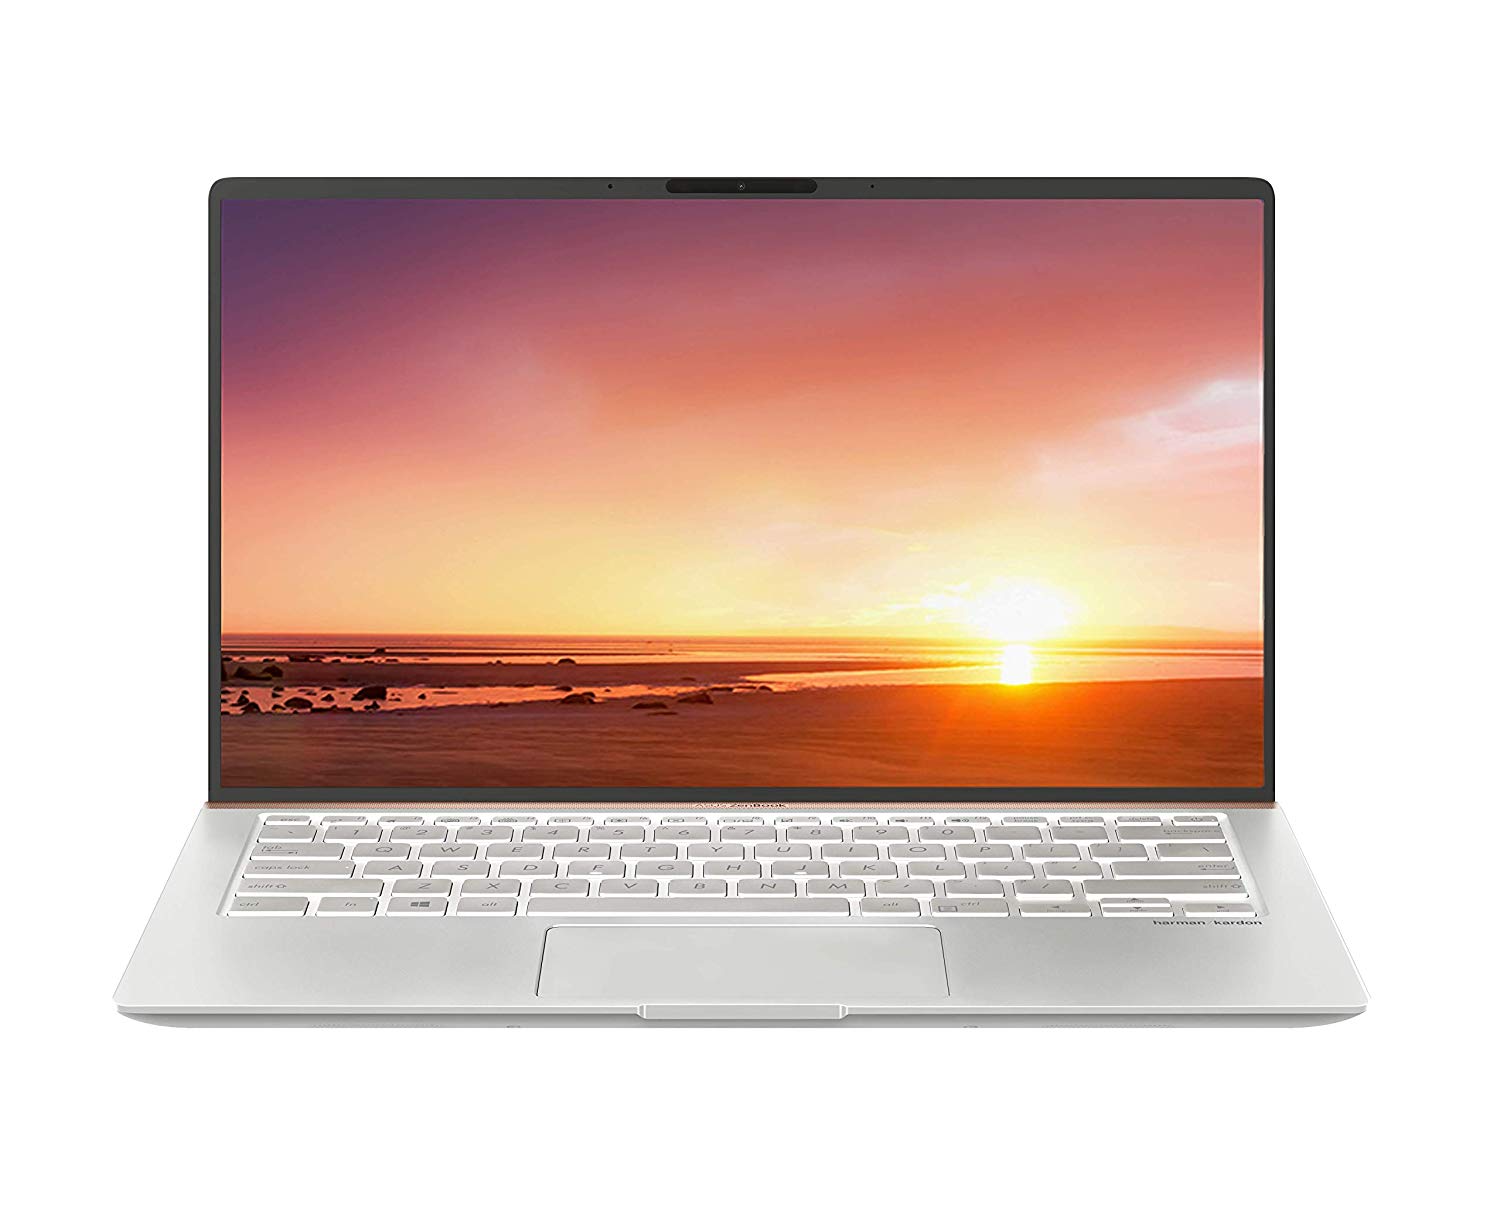 Asus zenbook стоимость. ASUS ZENBOOK 13 ux333. ASUS ZENBOOK 14 ux433fa. ASUS ZENBOOK 13 Ultra-Slim Laptop. ASUS ZENBOOK 14 Ultra-Slim Laptop.